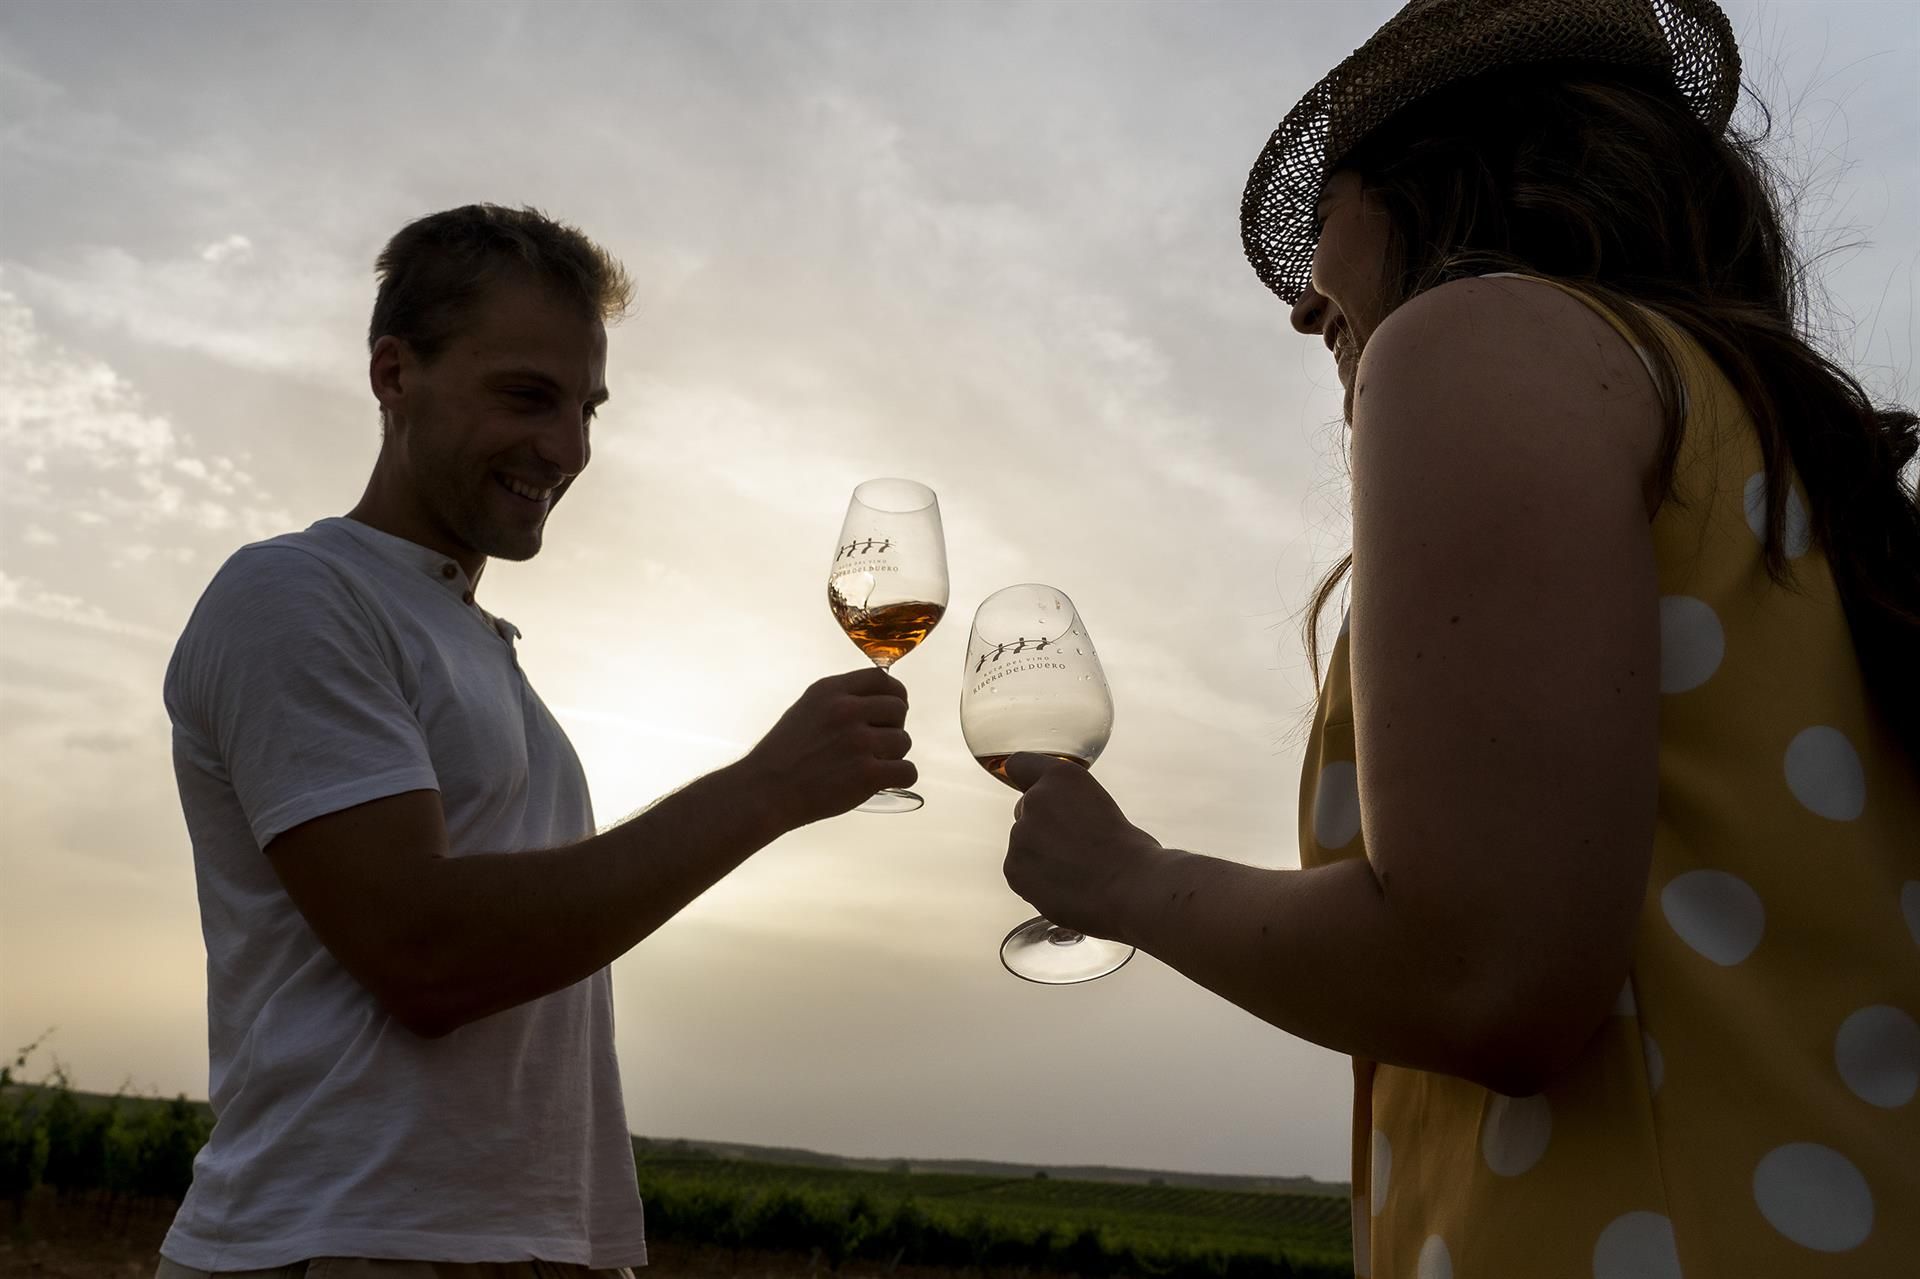 (Imagen de archivo. Dos turistas brindan durante un recorrido por la Ruta del Vino Ribera del Duero. EFE)